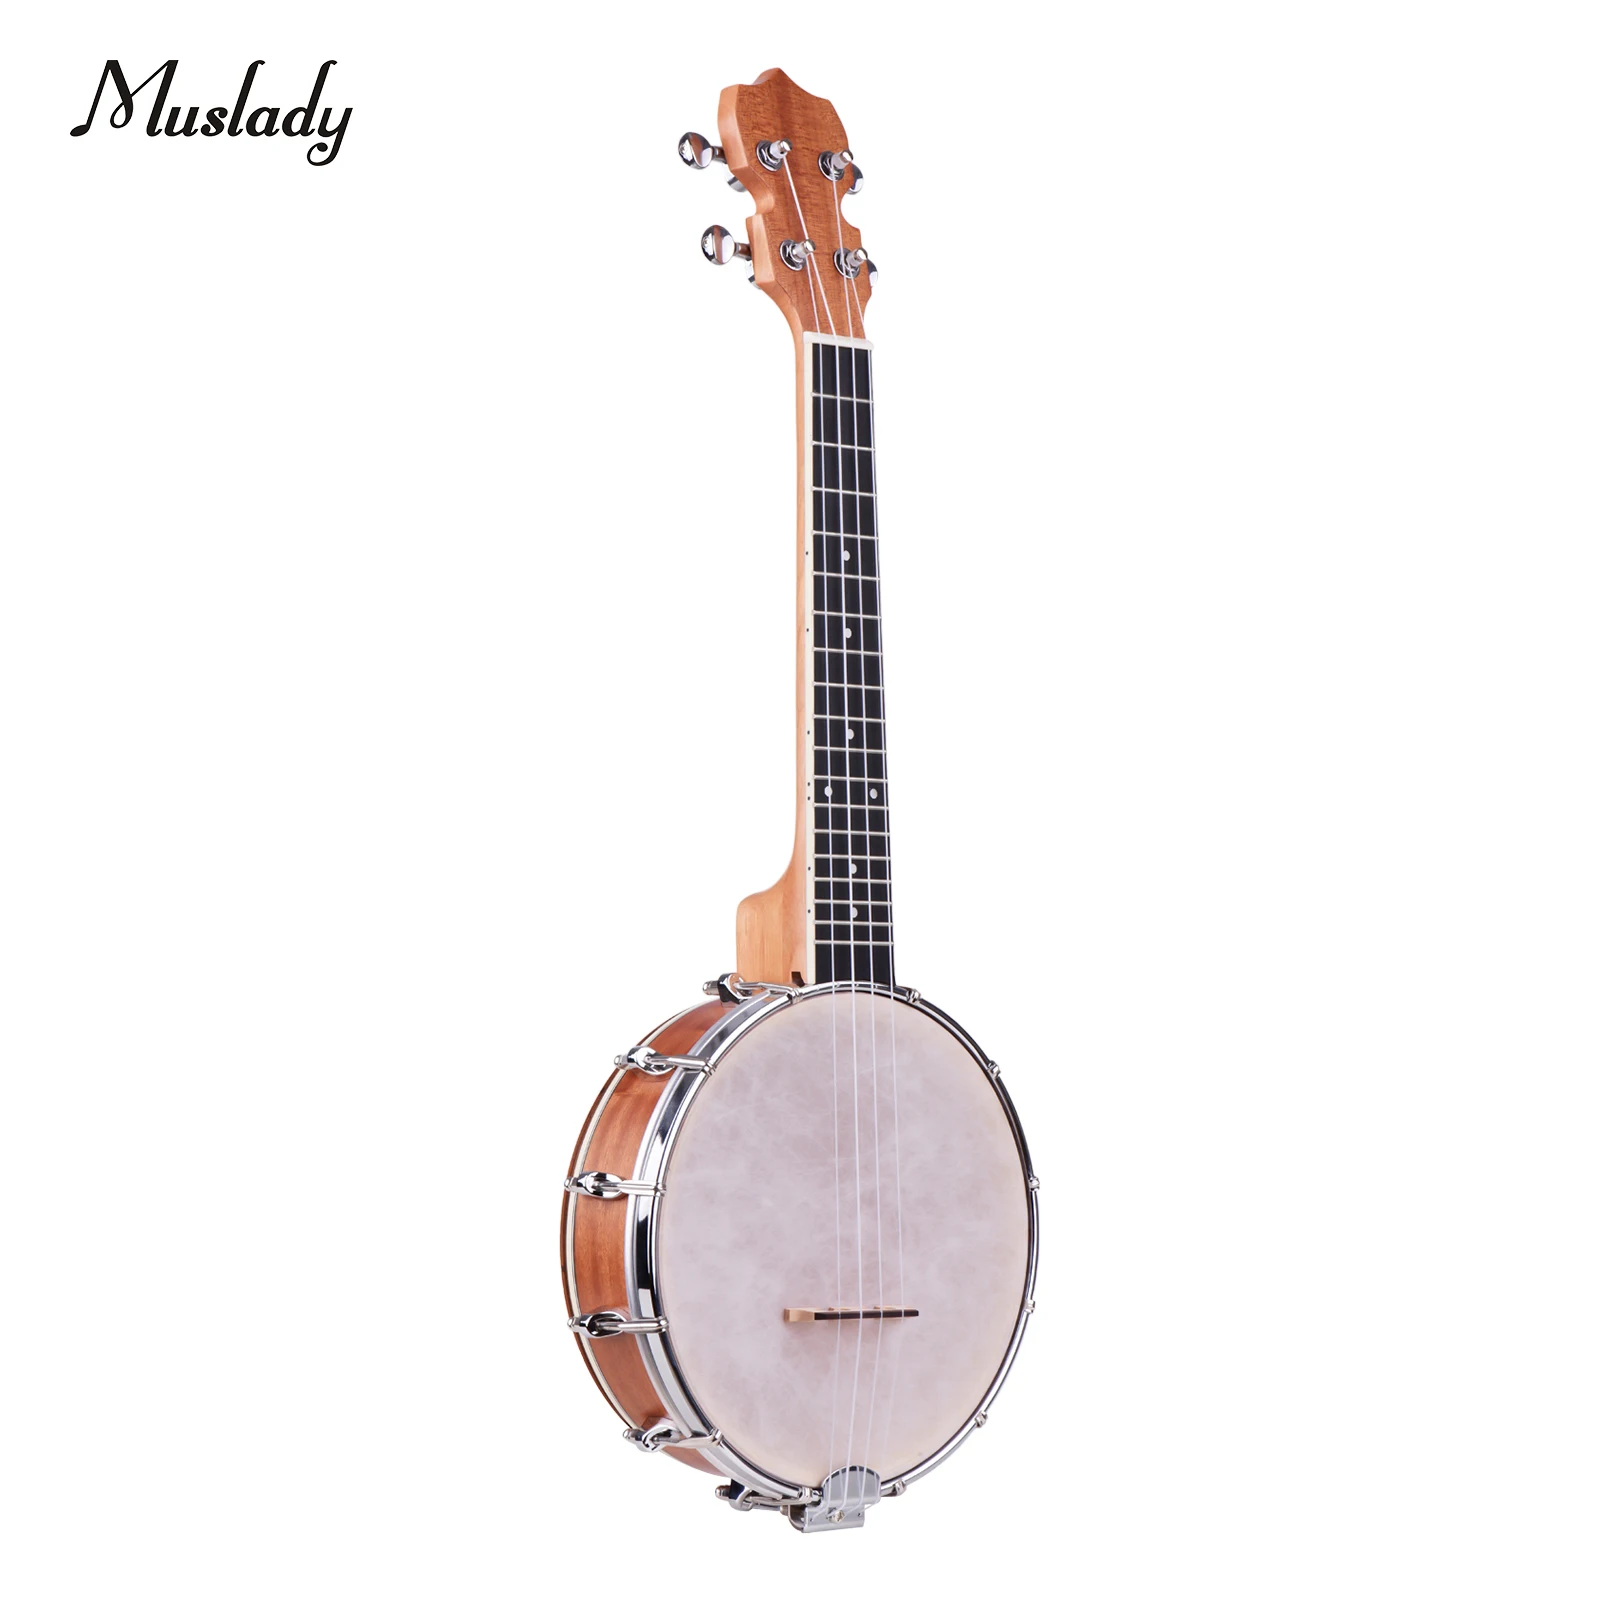 

Muslady Concert 23 Inch Open-back Banjo Uke 4 String Banjolele Maple Body Okoume Neck with Tuning Wrench Bridge Positioning